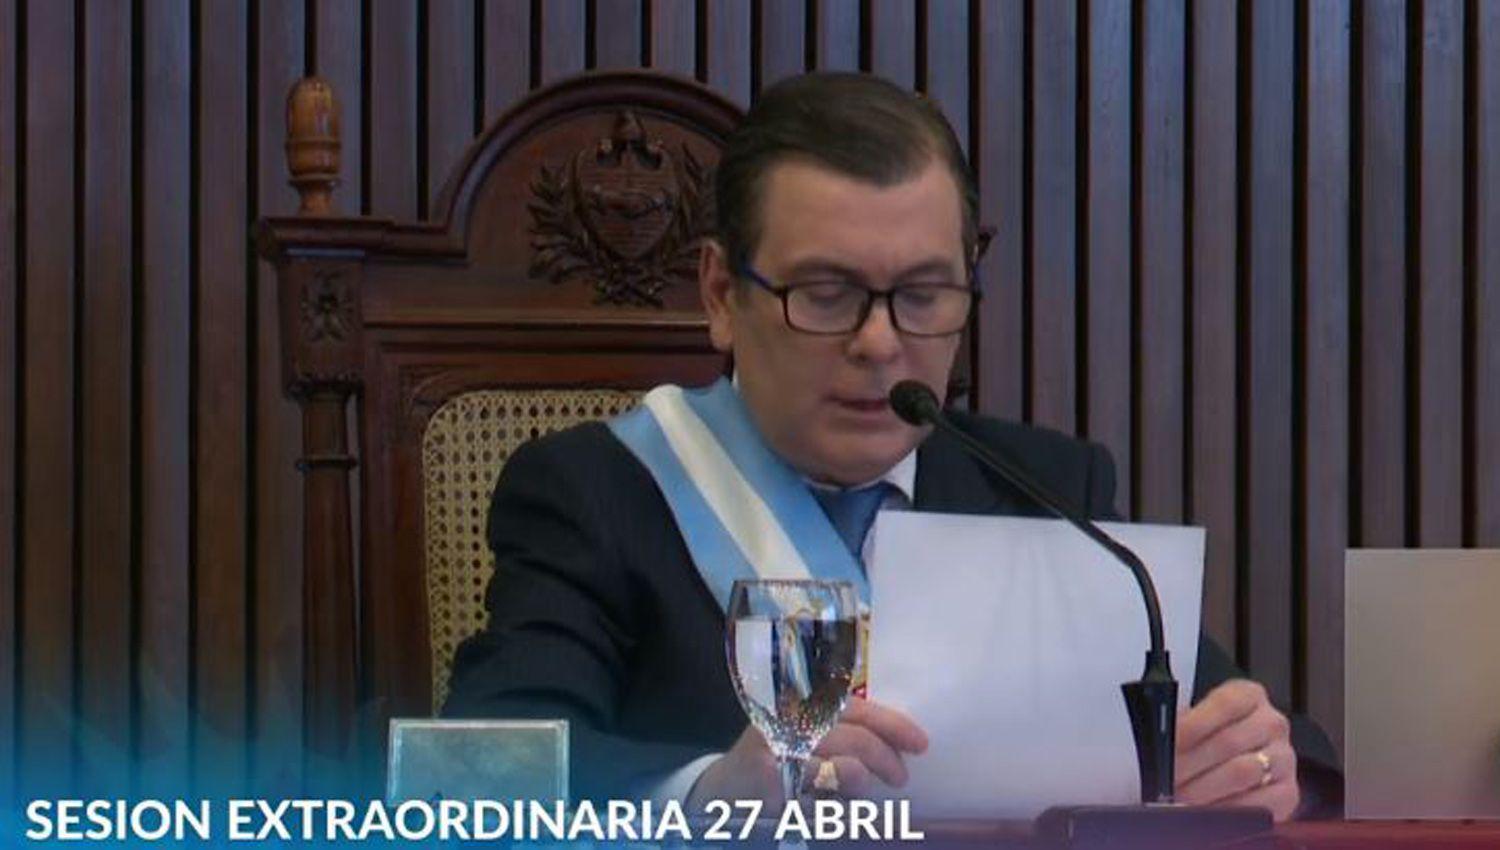 Zamora brindoacute su mensaje anual desde la Legislatura- el discurso completo